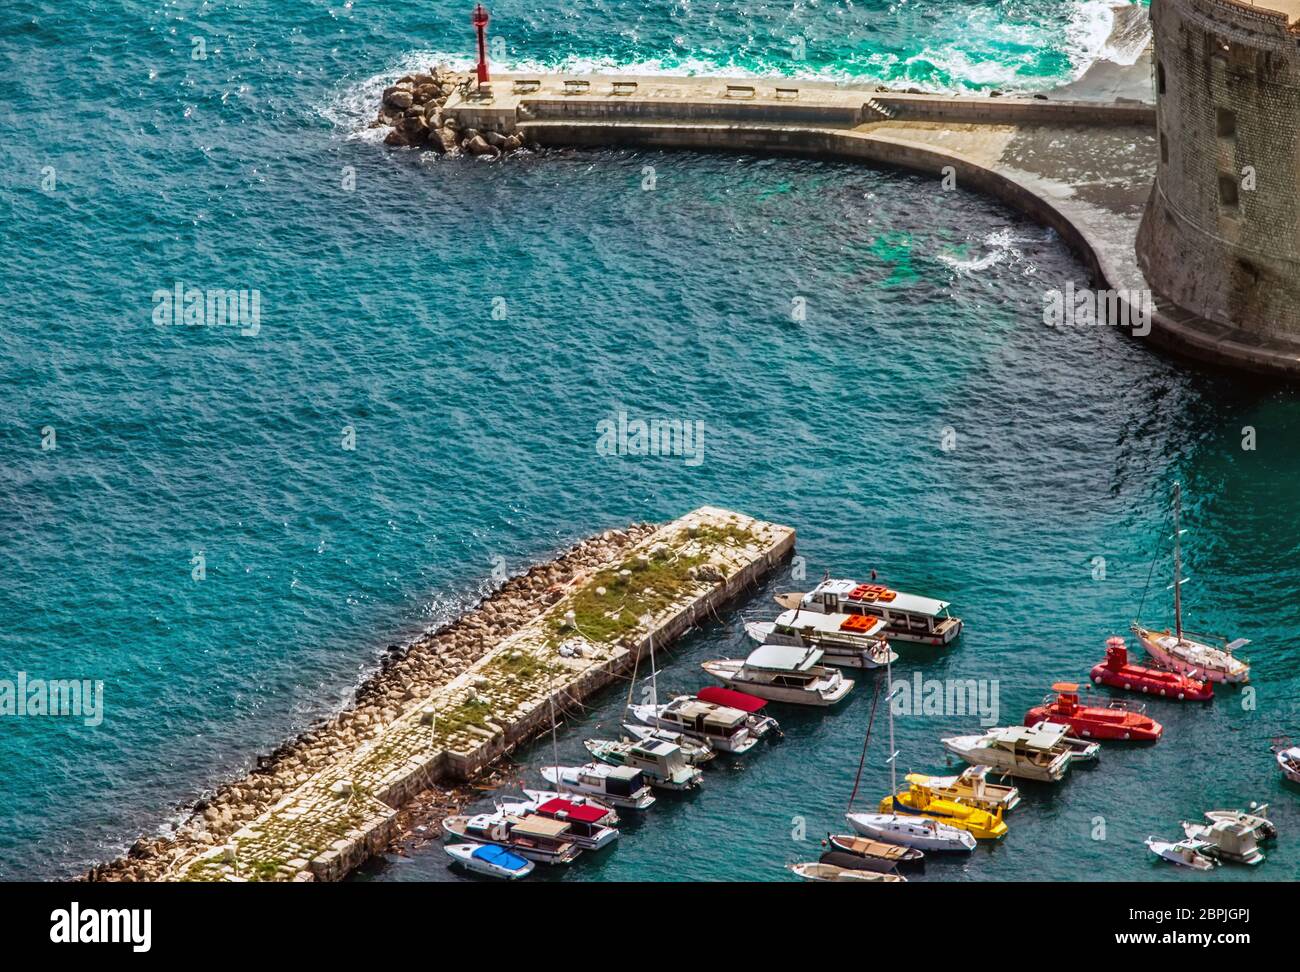 Blick auf den Hafen und die Altstadt von Dubrovnik Kroatien Stock Photo